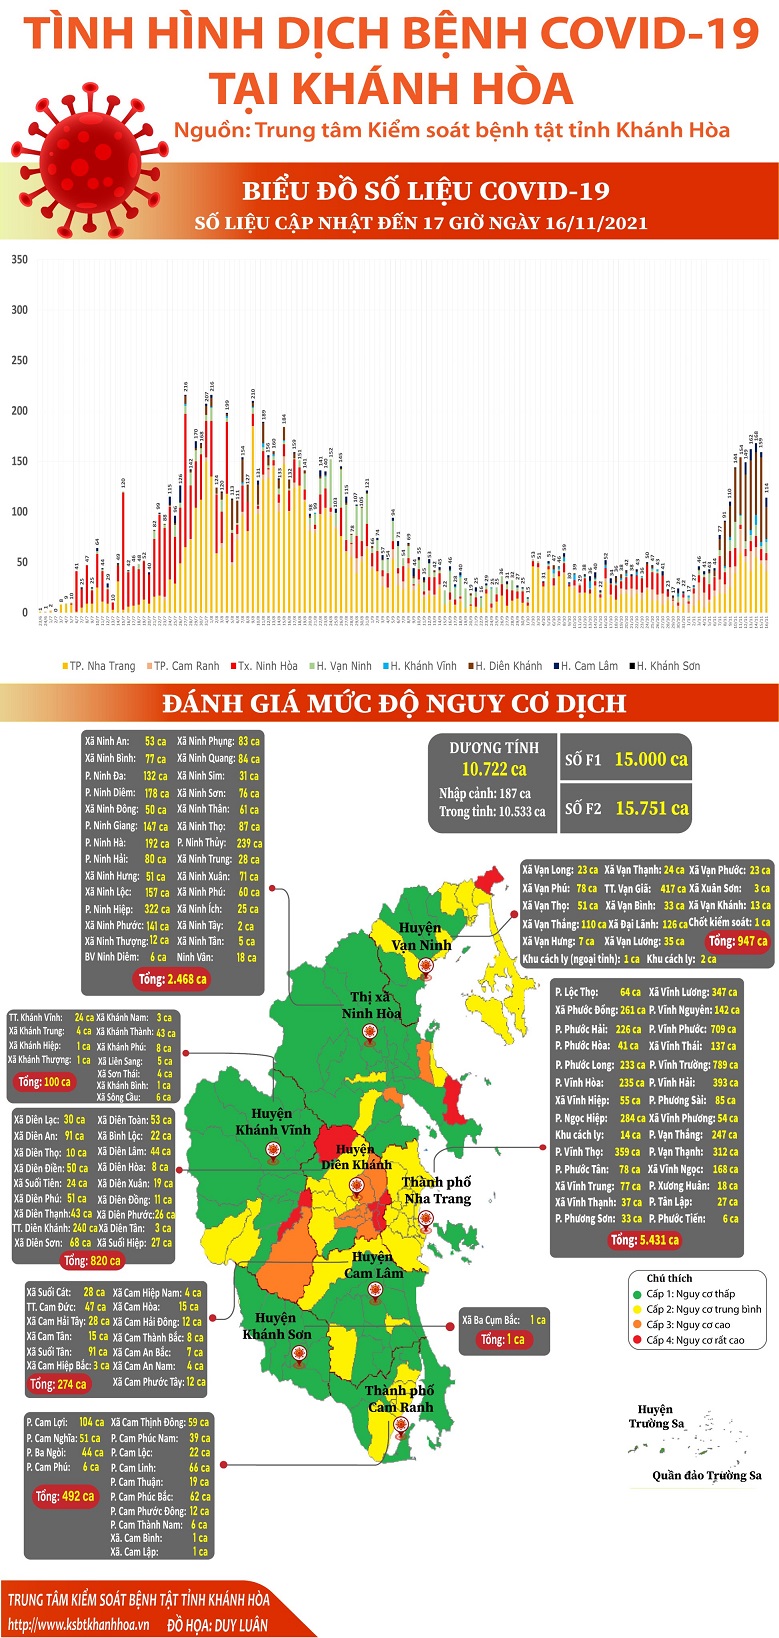 Biểu đồ tình hình dịch bệnh COVID-19 tại Khánh Hòa (Cập nhật đến 17 giờ 00 ngày 16/11/2021)